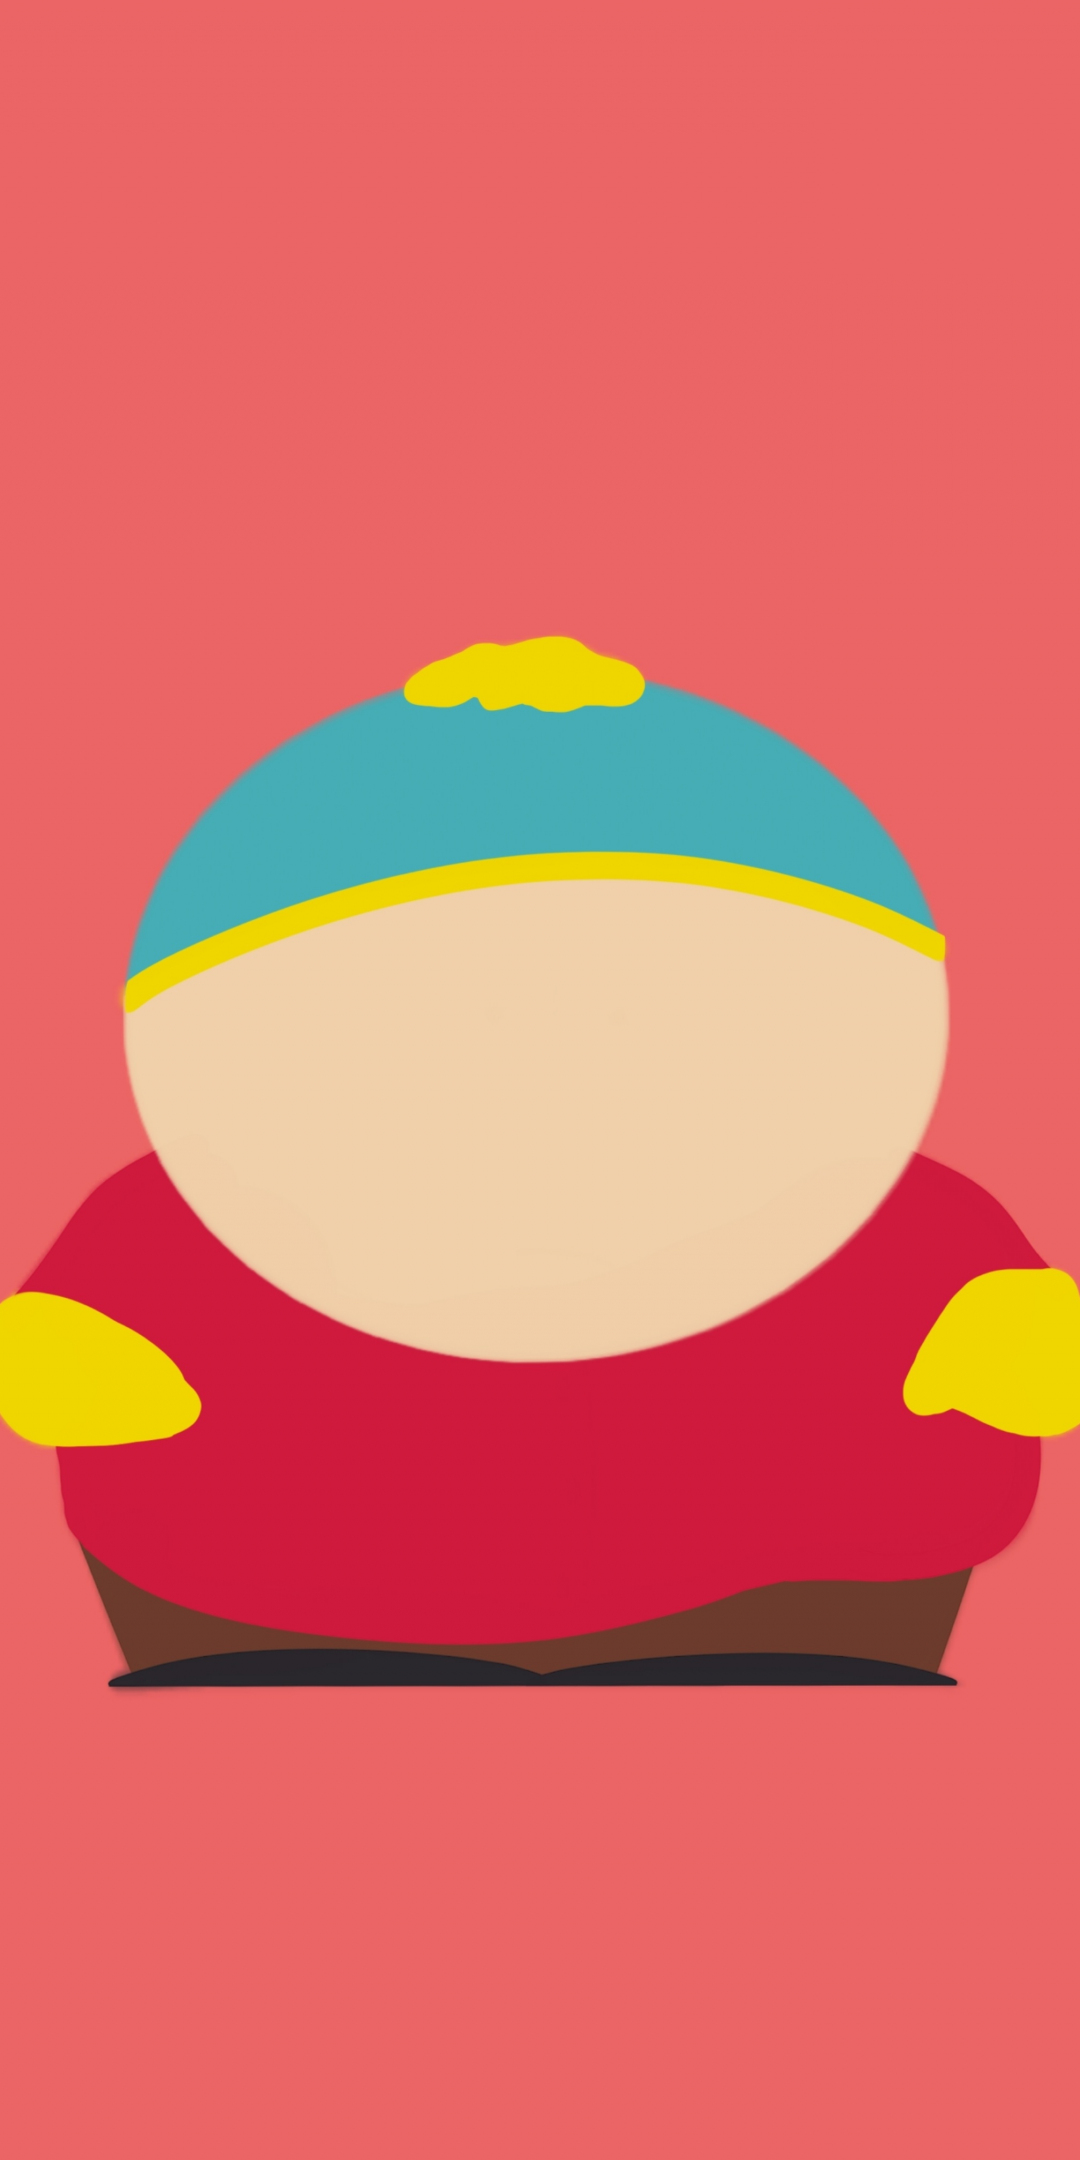 Eric Cartman, south park, tv show, minimal, 1080x2160 wallpaper